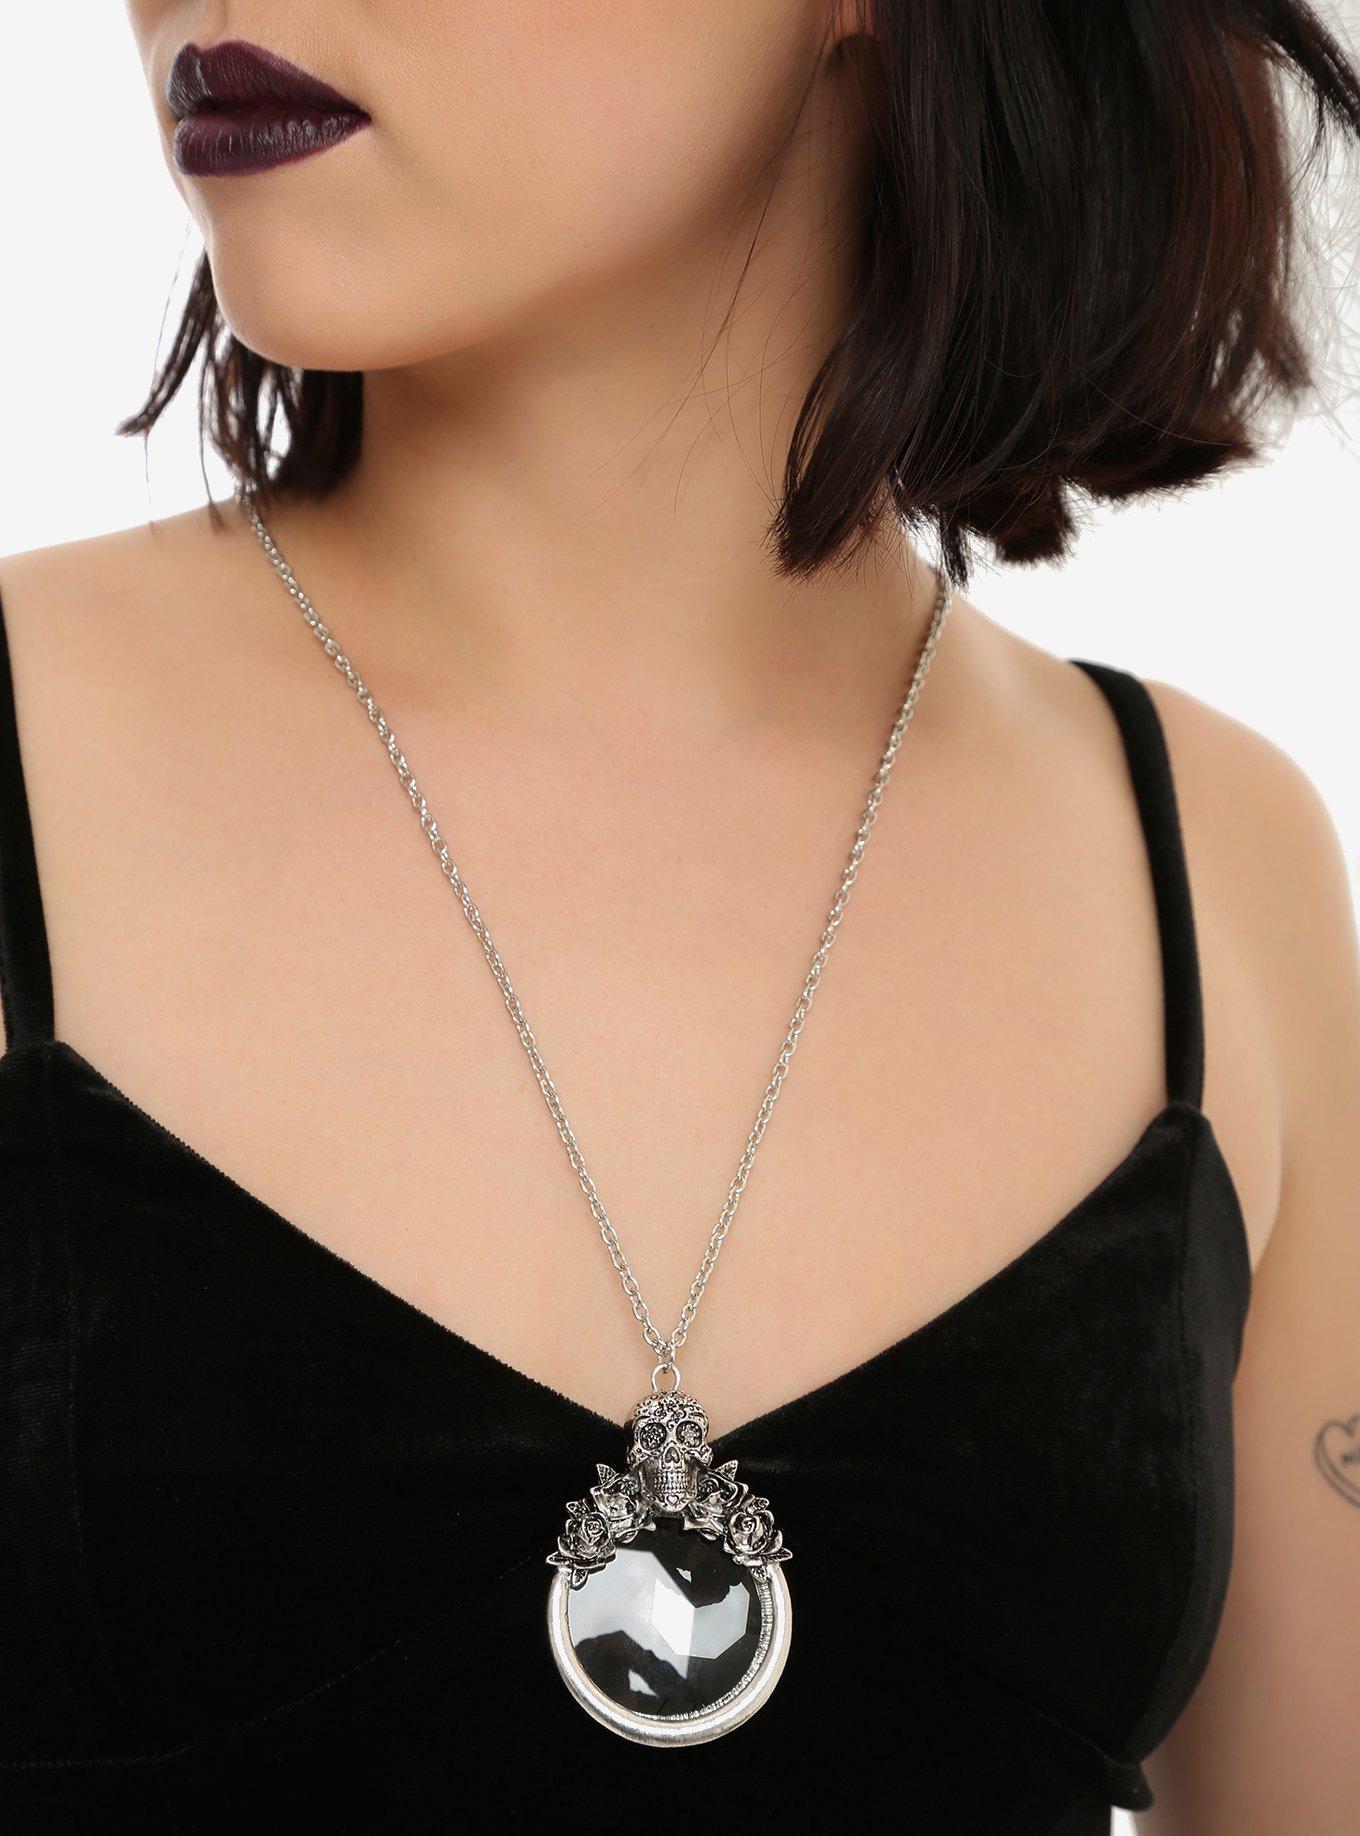 Blackheart Skull Glass Pendant Necklace, , alternate